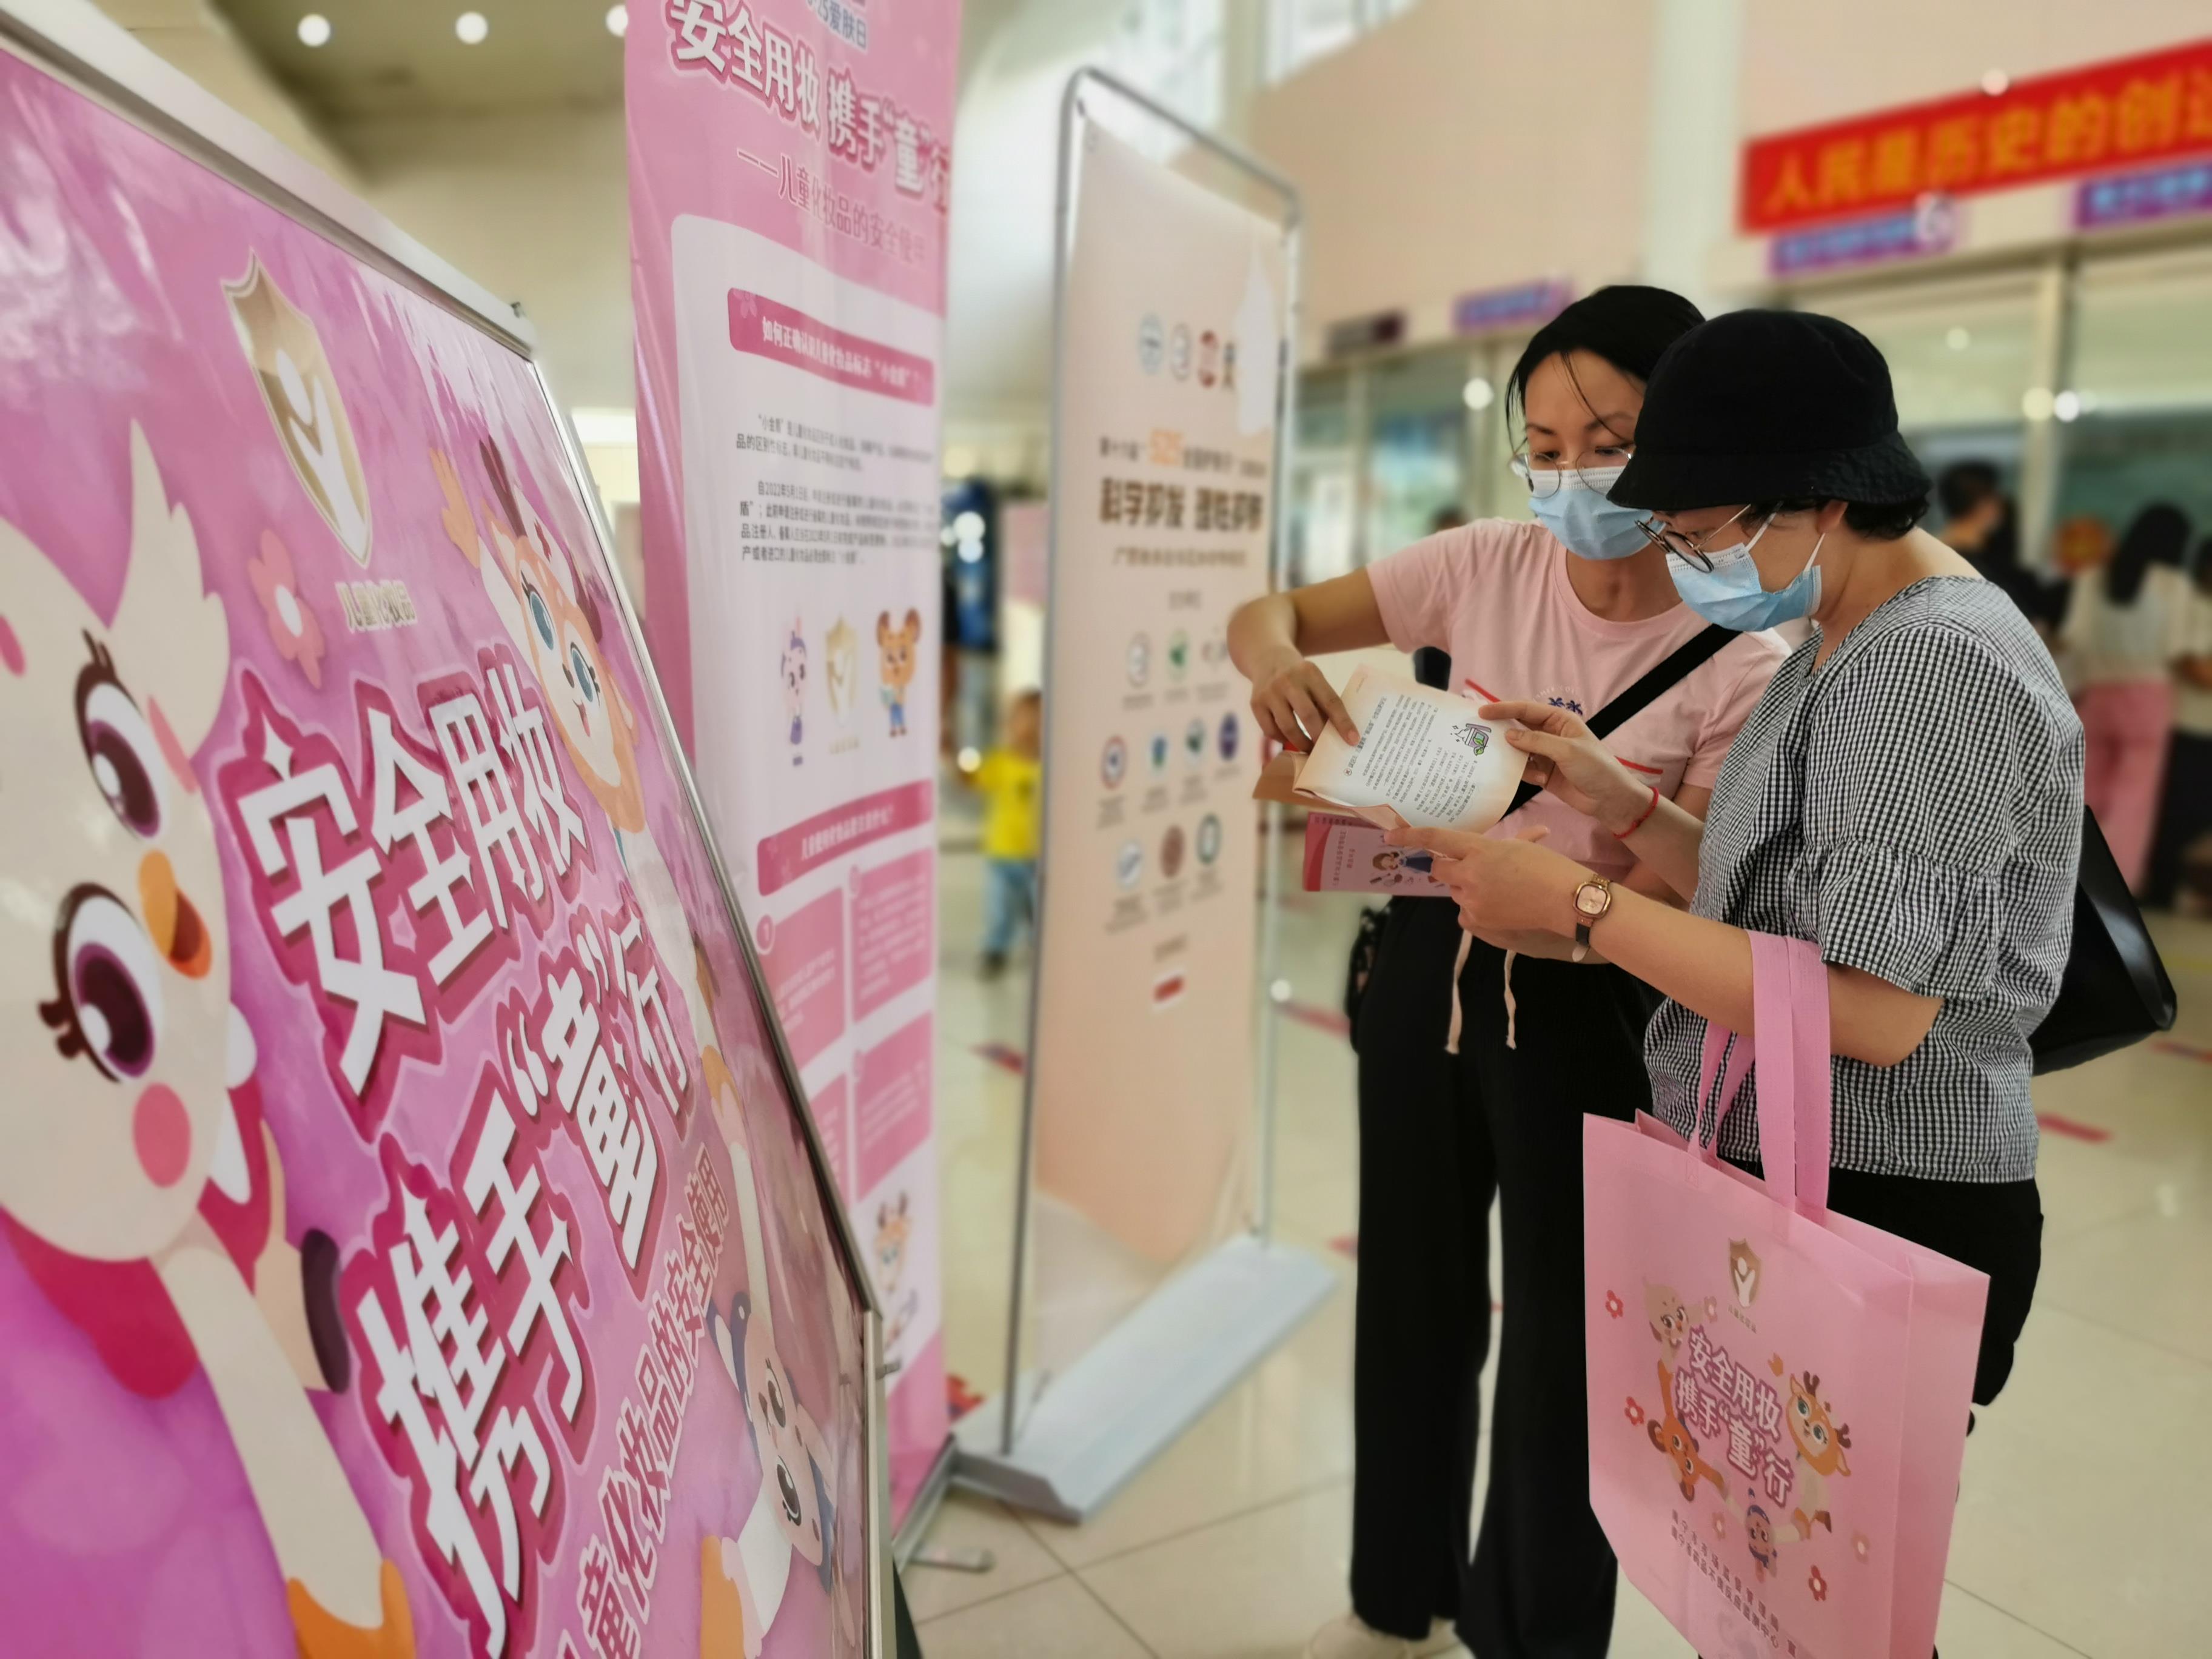 广西南宁举行“爱肤日”行动 向导破费者公平清静运用儿童化装品